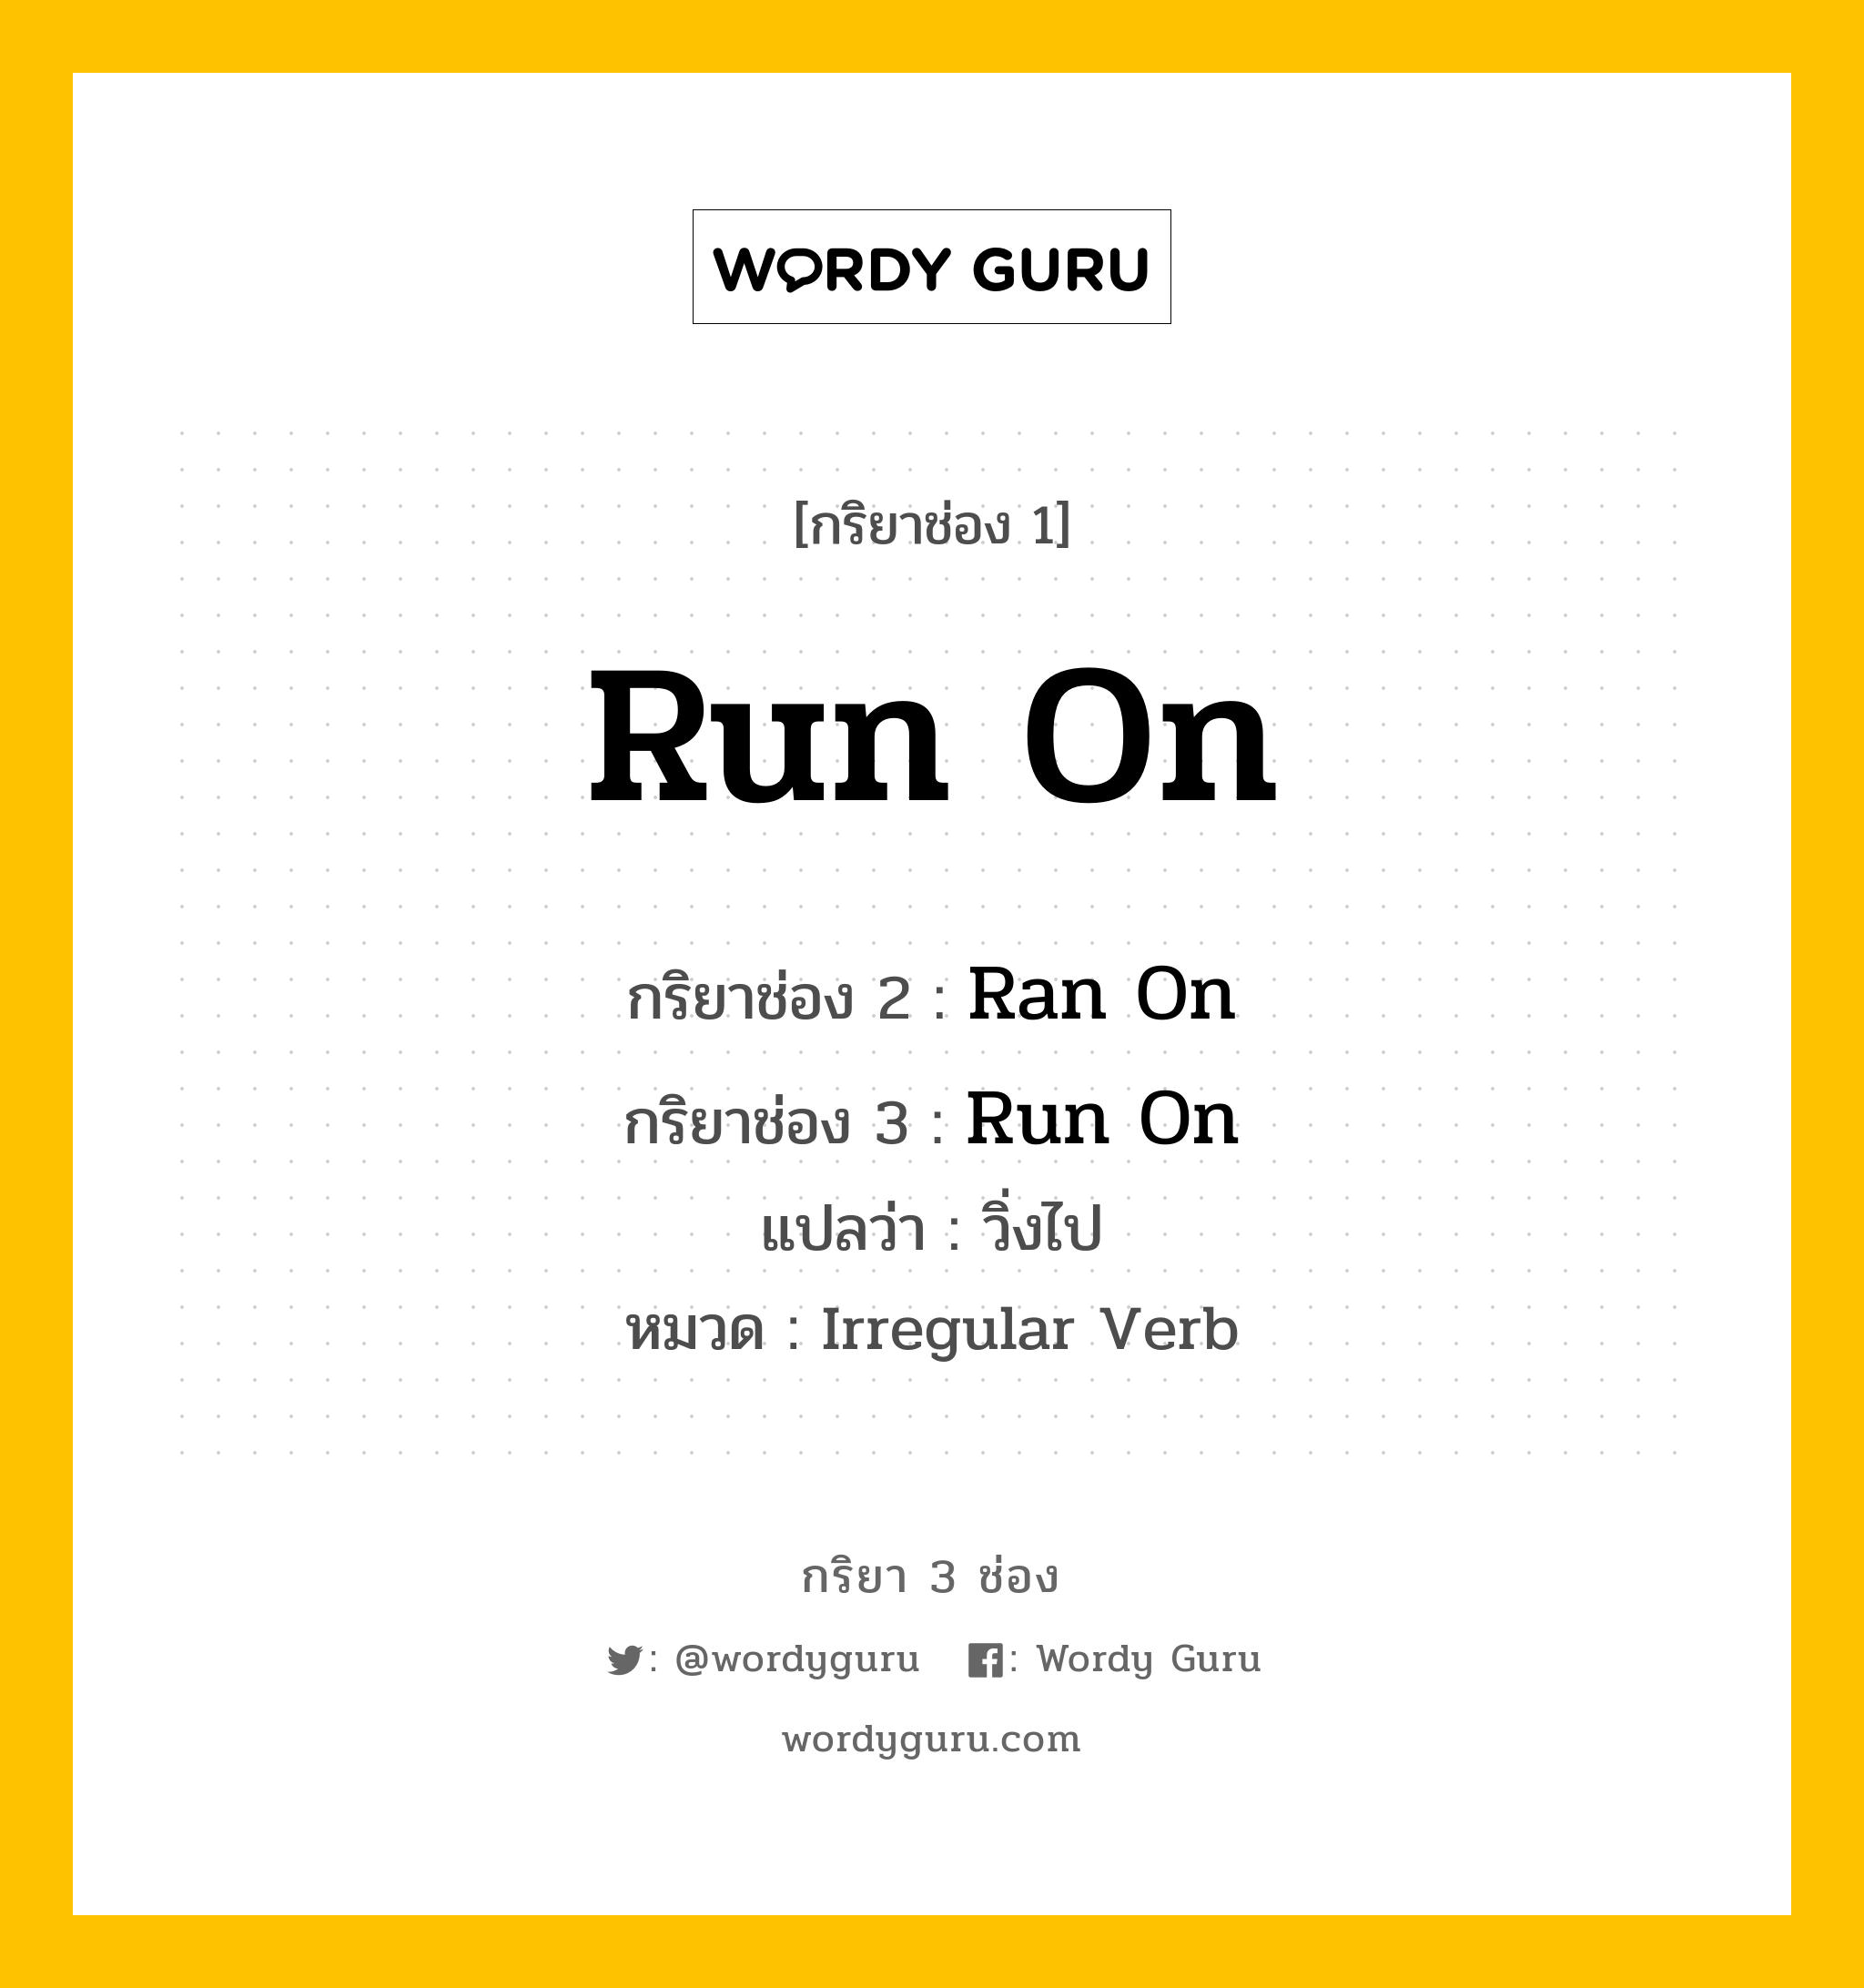 กริยา 3 ช่อง: Run On ช่อง 2 Run On ช่อง 3 คืออะไร, กริยาช่อง 1 Run On กริยาช่อง 2 Ran On กริยาช่อง 3 Run On แปลว่า วิ่งไป หมวด Irregular Verb หมวด Irregular Verb